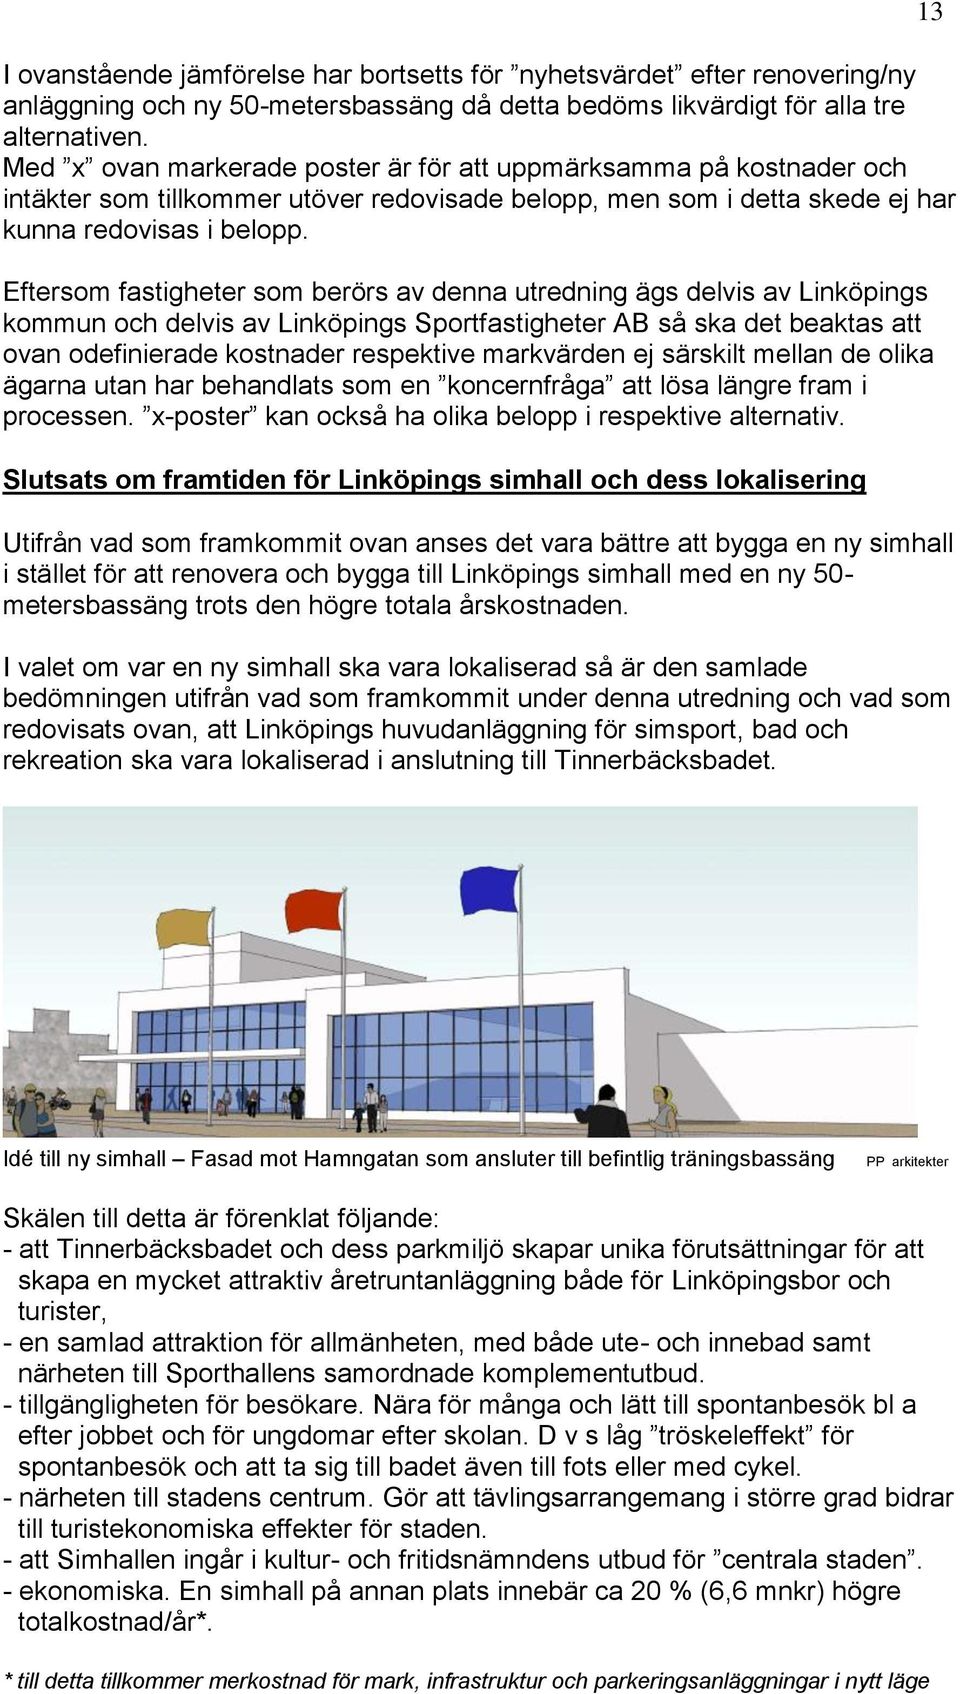 Eftersom fastigheter som berörs av denna utredning ägs delvis av Linköpings kommun och delvis av Linköpings Sportfastigheter AB så ska det beaktas att ovan odefinierade kostnader respektive